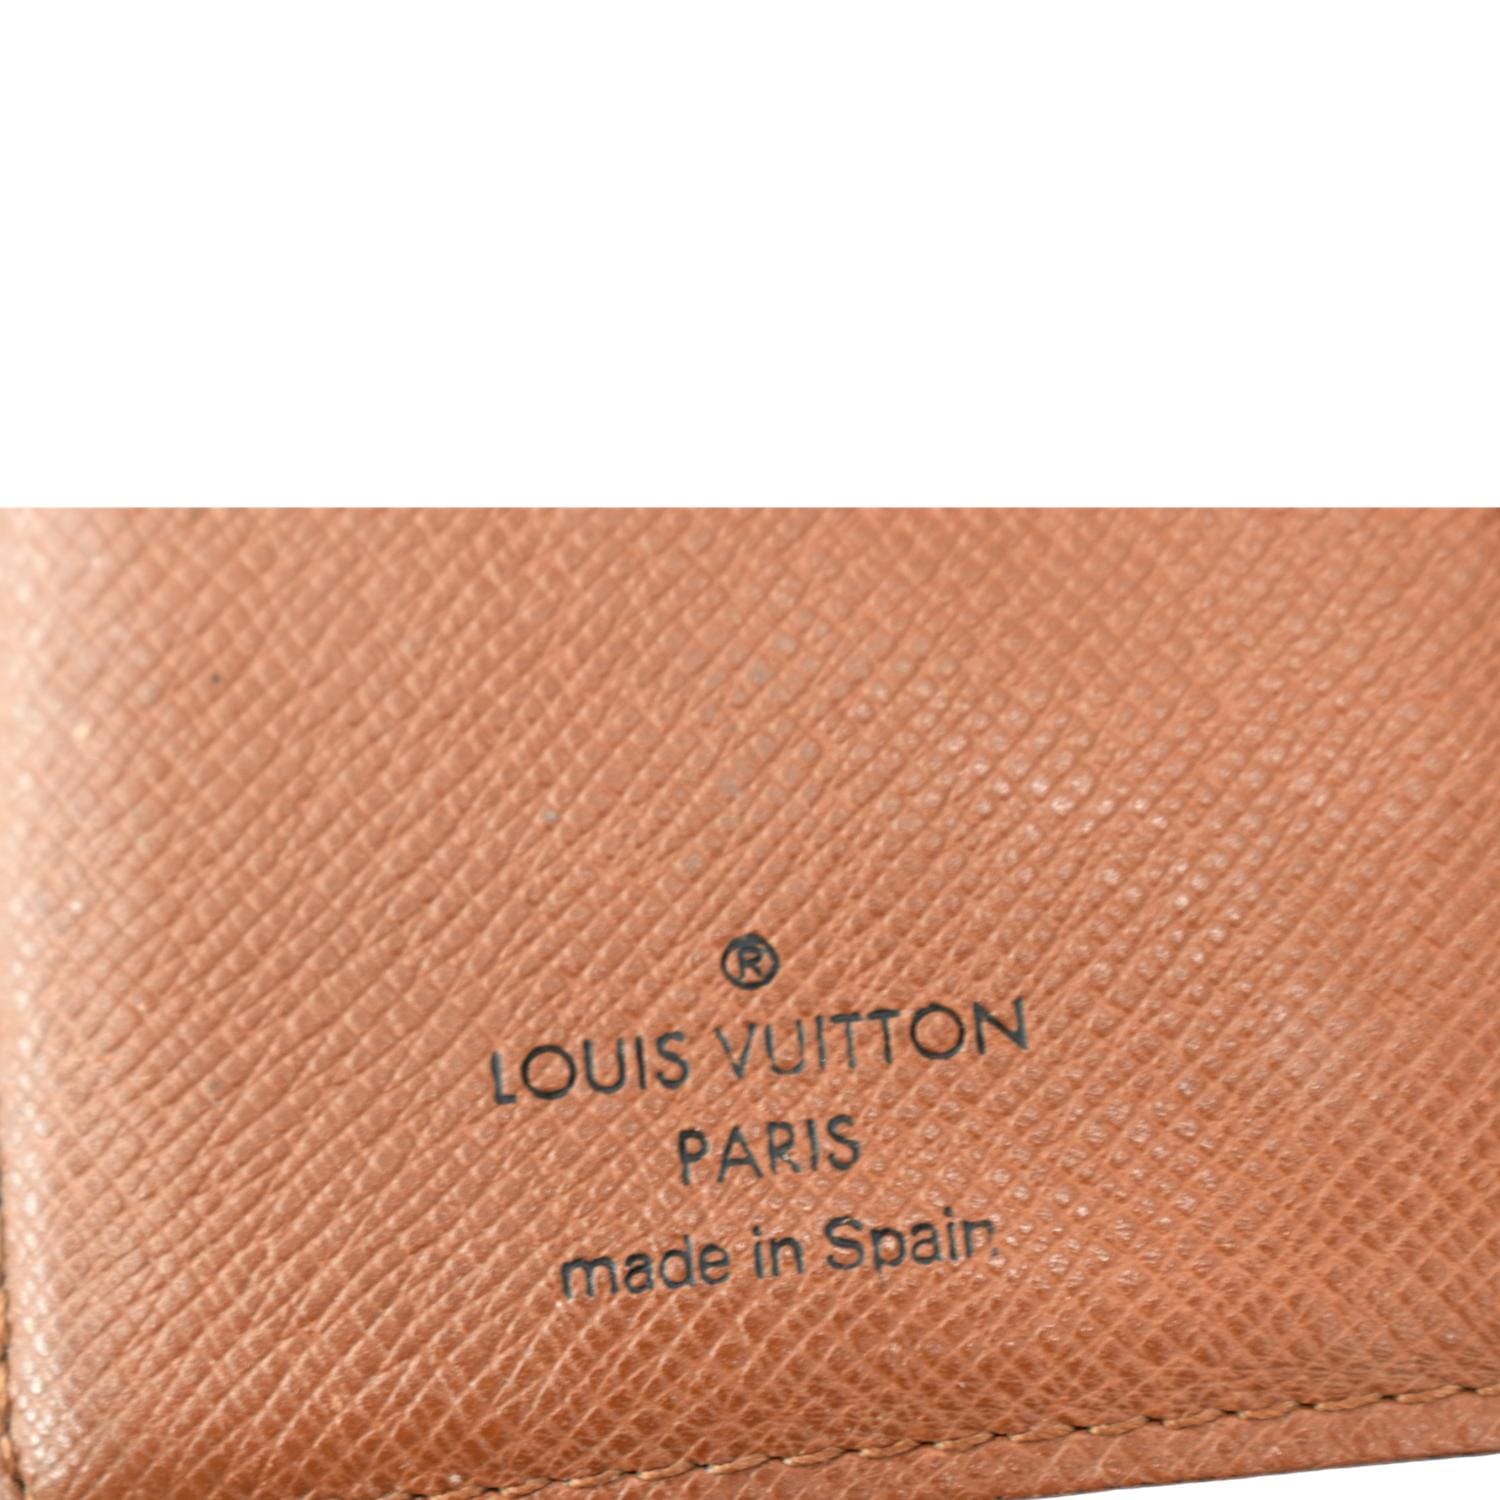 Louis Vuitton, Bags, Louis Vuitton Pm Agenda Card Holder